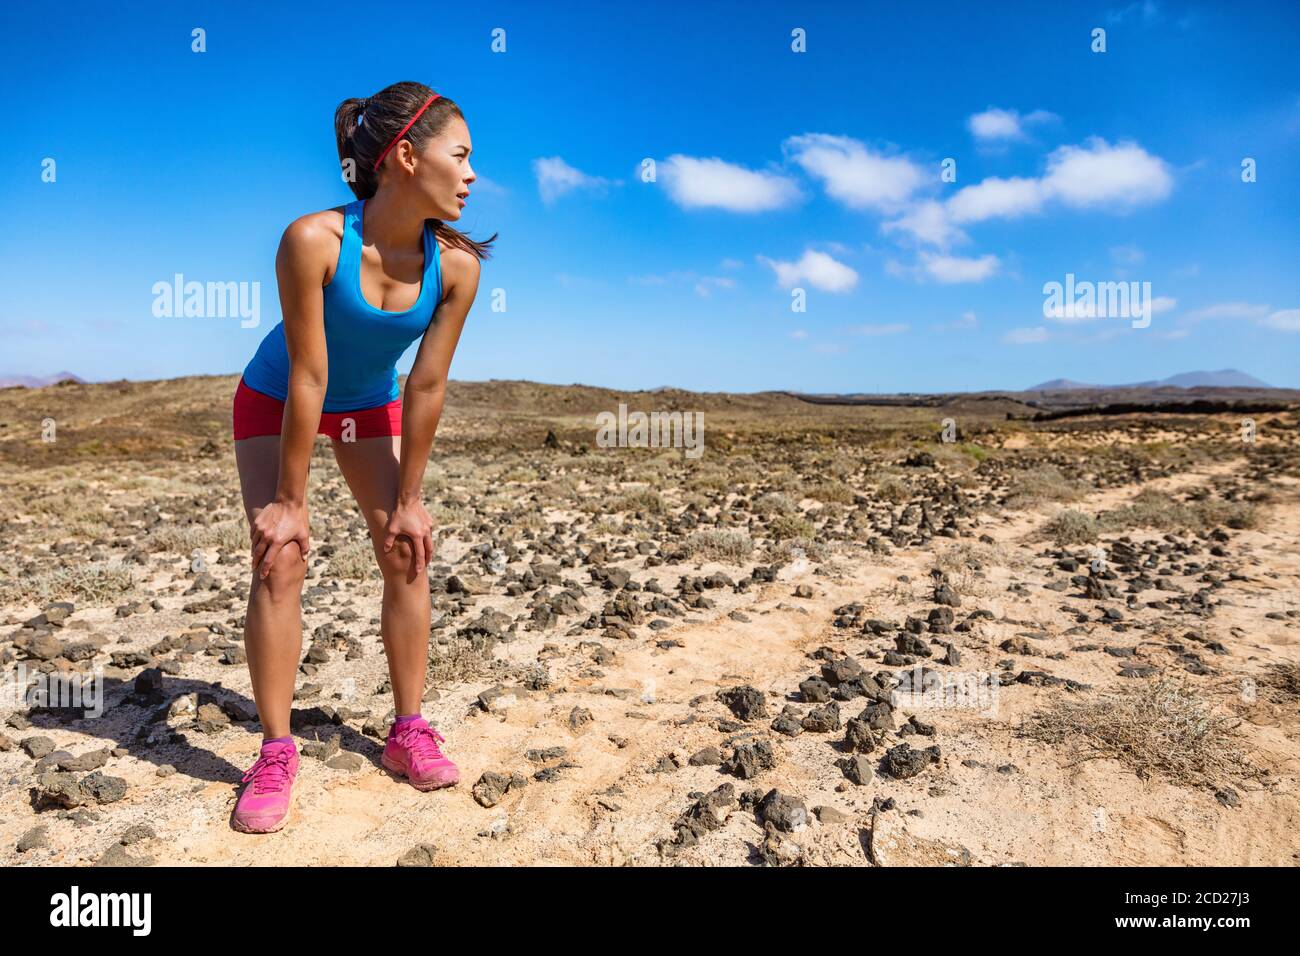 Trailrunner Frau müde Atmung schwer während ultra laufen Cardio-Training erschöpft auf schwierigen Lauf Rennen. Asiatischer junger Athlet im Wüstensommer Stockfoto